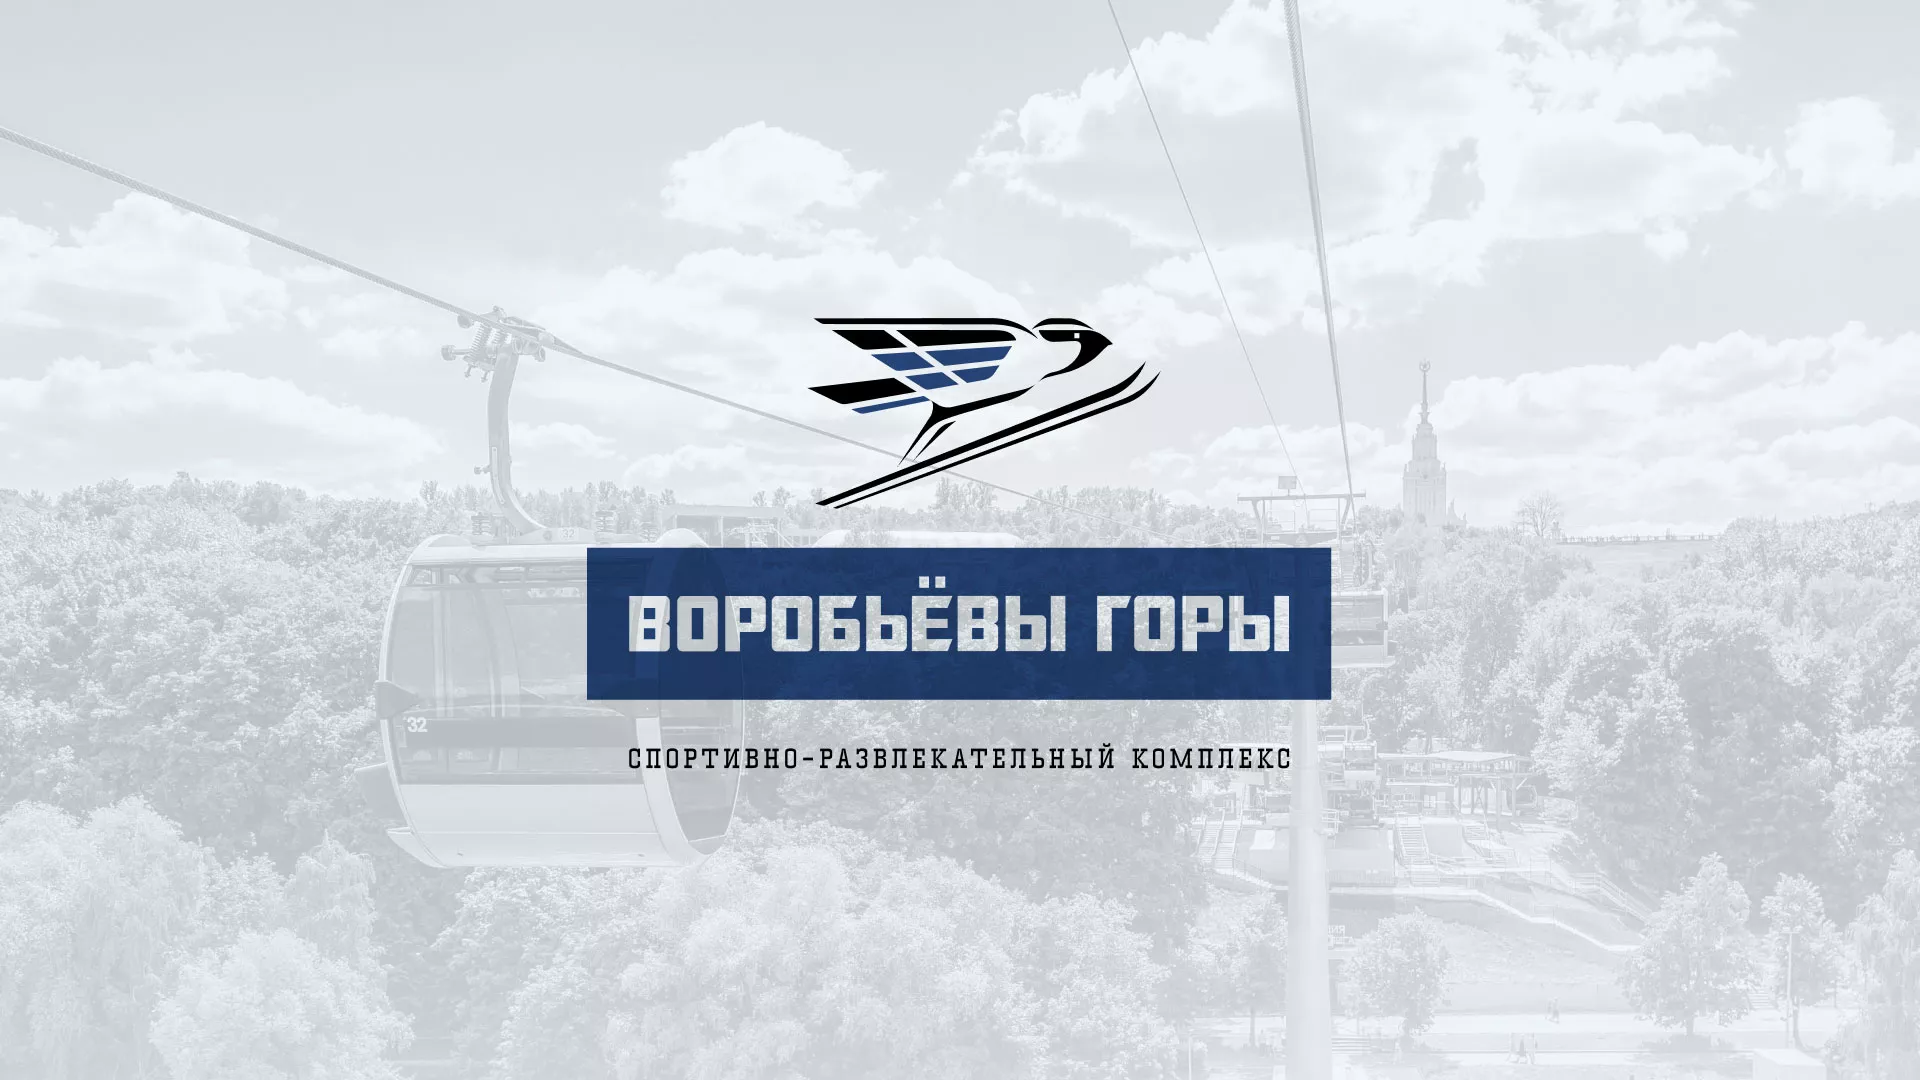 Разработка сайта в Гремячинске для спортивно-развлекательного комплекса «Воробьёвы горы»